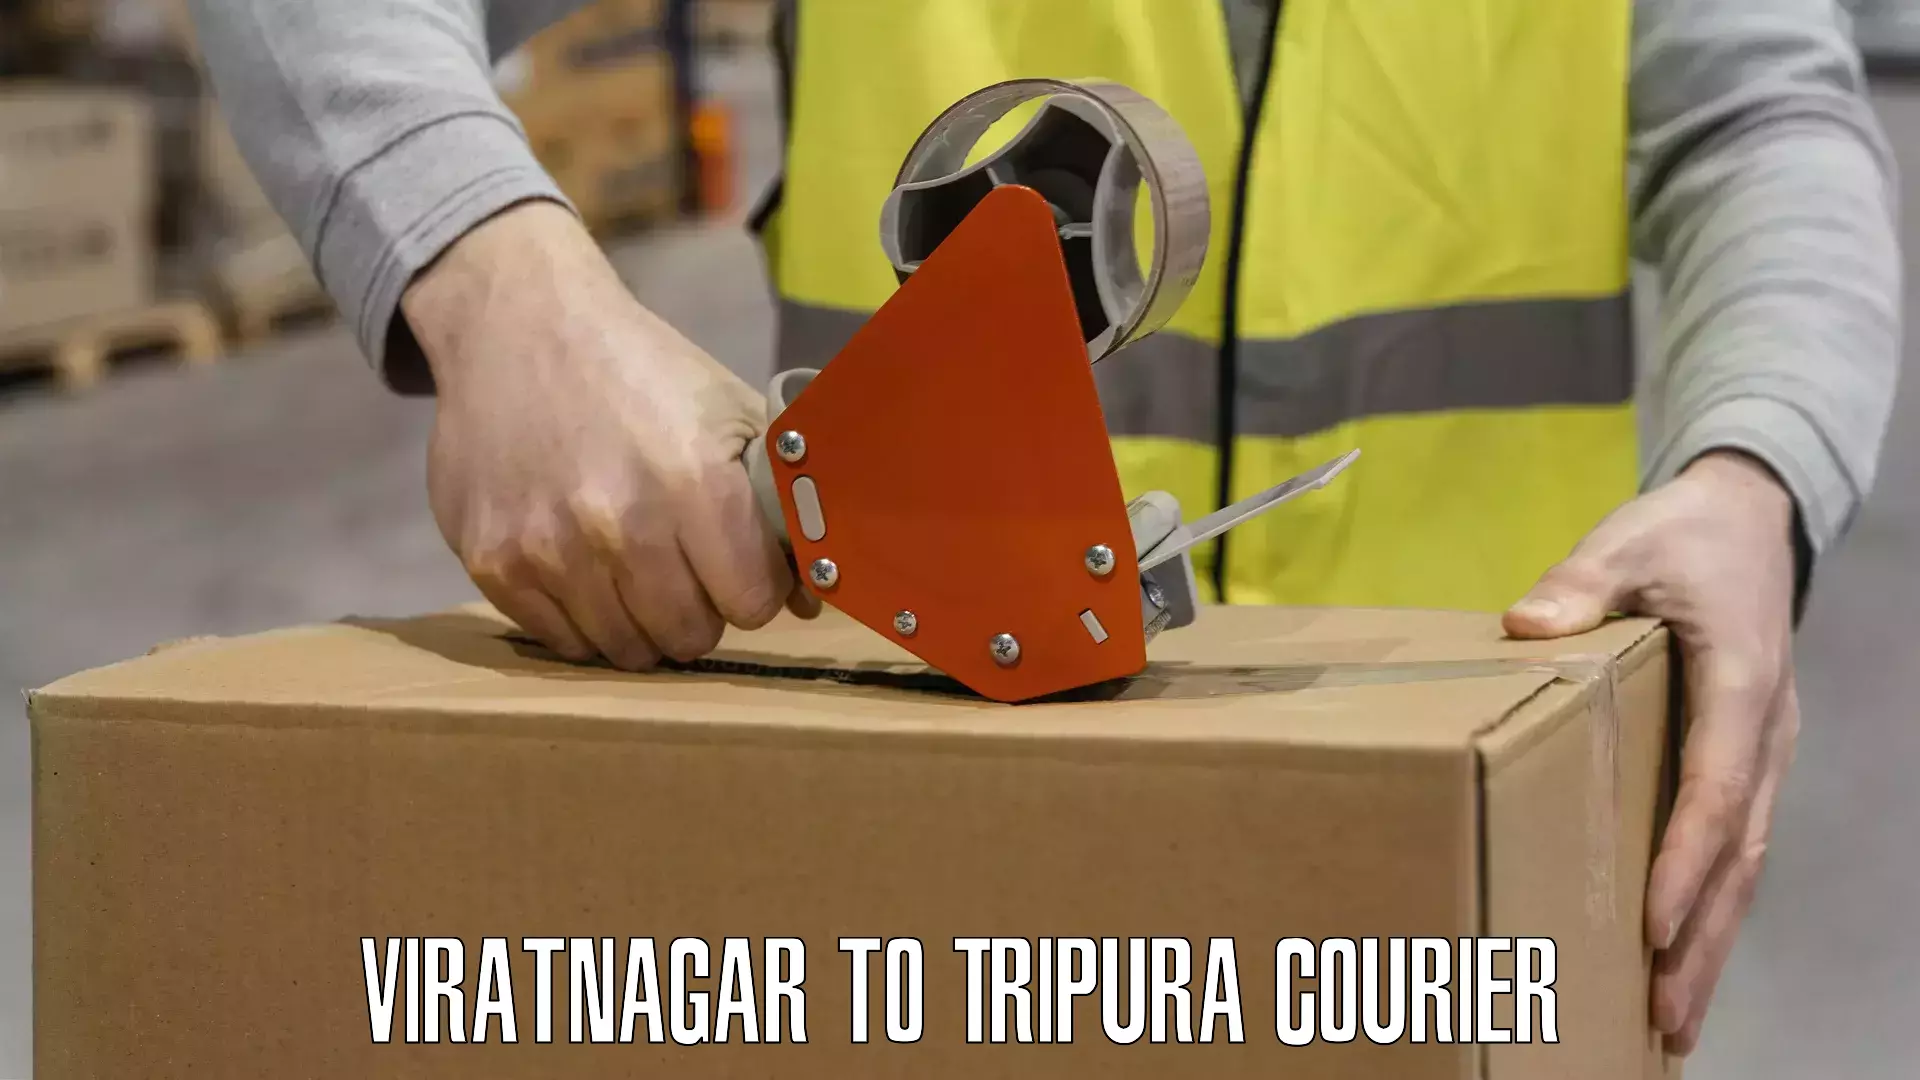 Large package courier Viratnagar to Tripura